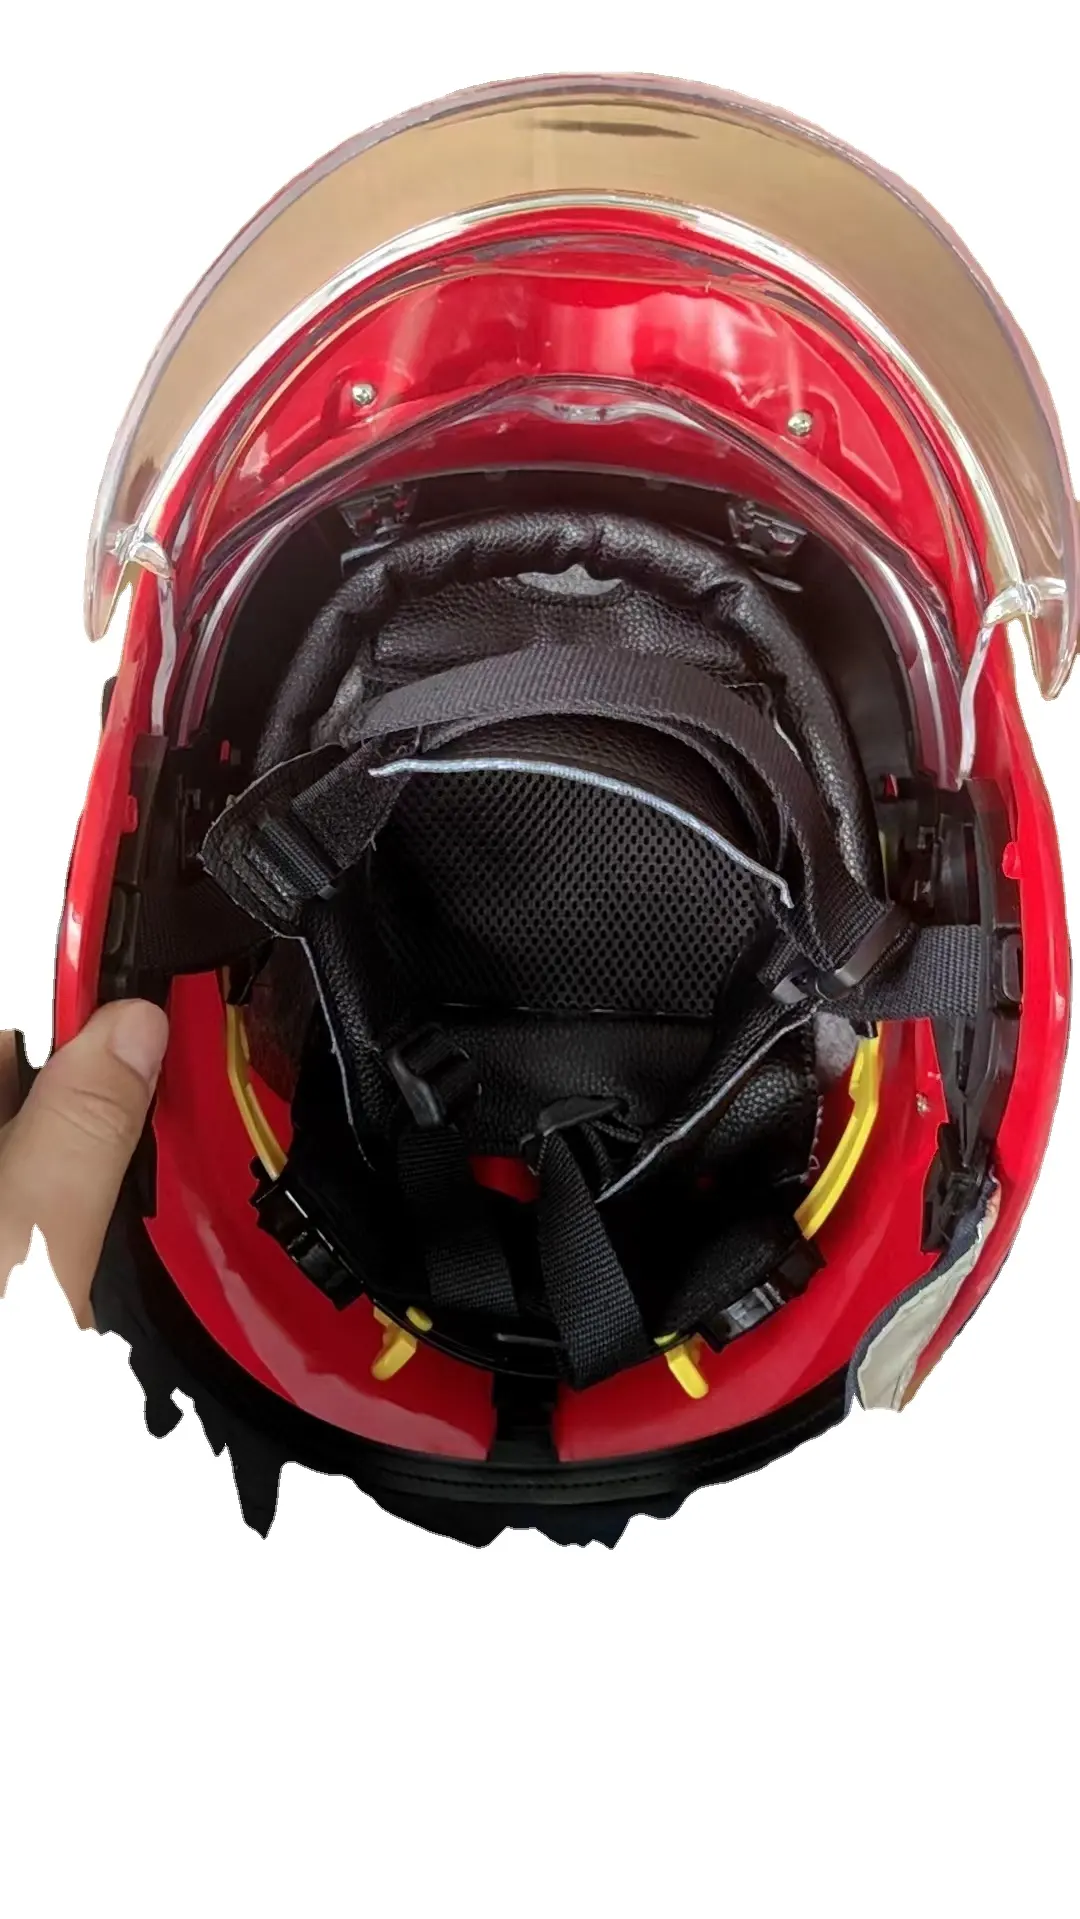 Bán Hot en443 cứu hộ cứu hỏa Mũ bảo hiểm lính cứu hỏa cứu hộ Mũ bảo hiểm cho chữa cháy lính cứu hỏa cứu hộ Mũ bảo hiểm